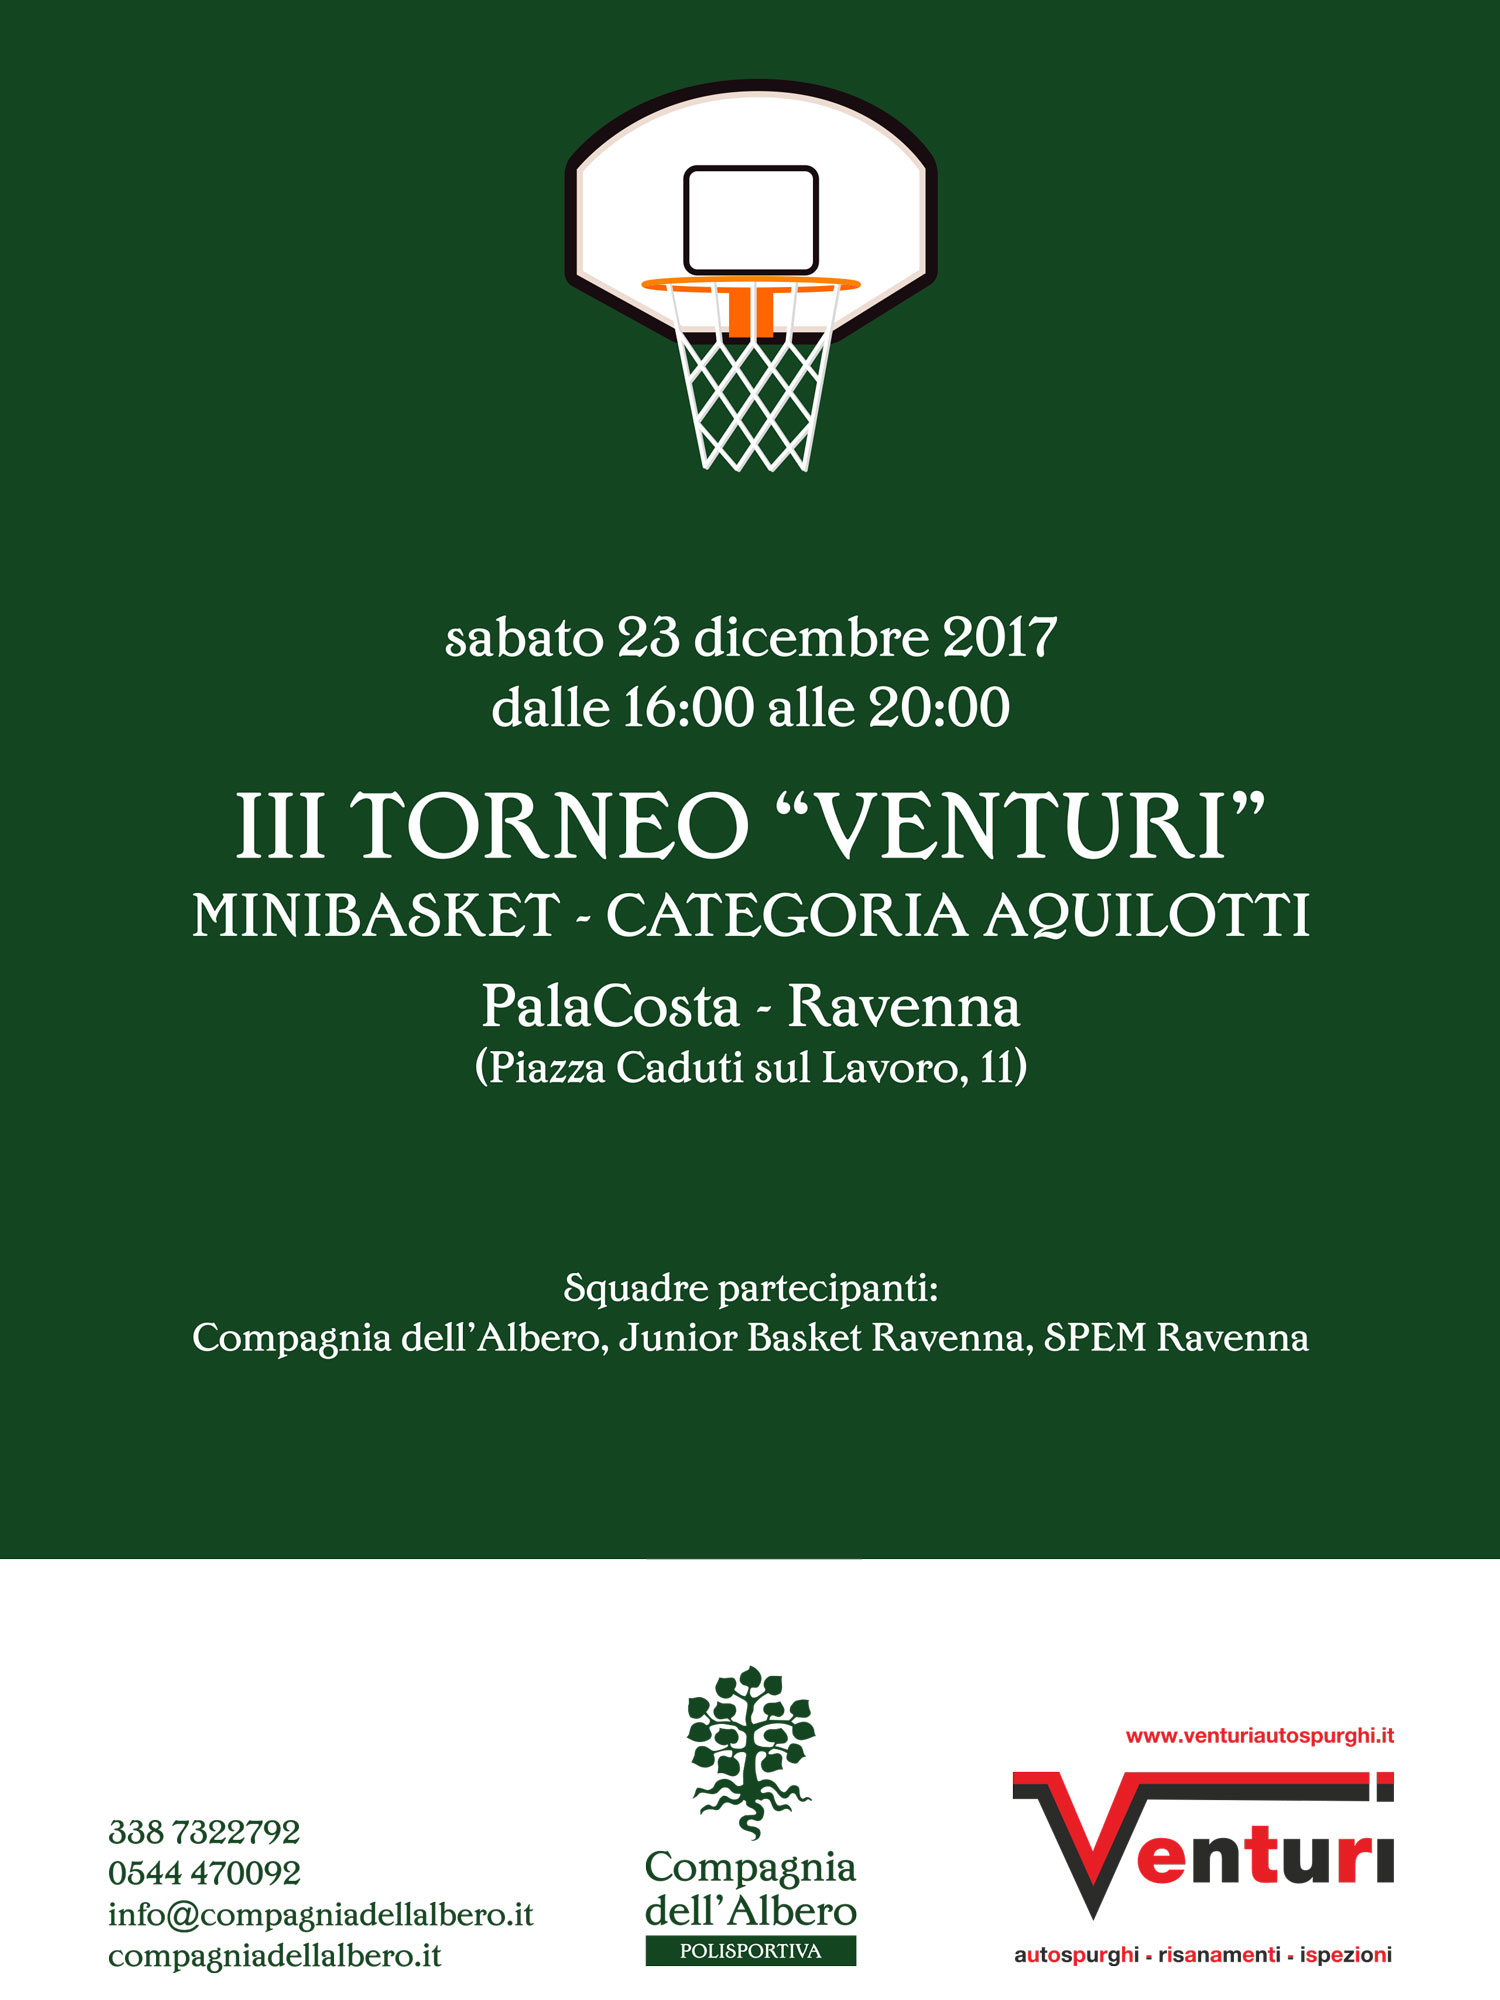 Il 23 dicembre il 3° Torneo Venturi: al Pala Costa un triangolare di Minibasket tra Compagnia dell’Albero, Spem Ravenna e Junior Basket Ravenna.